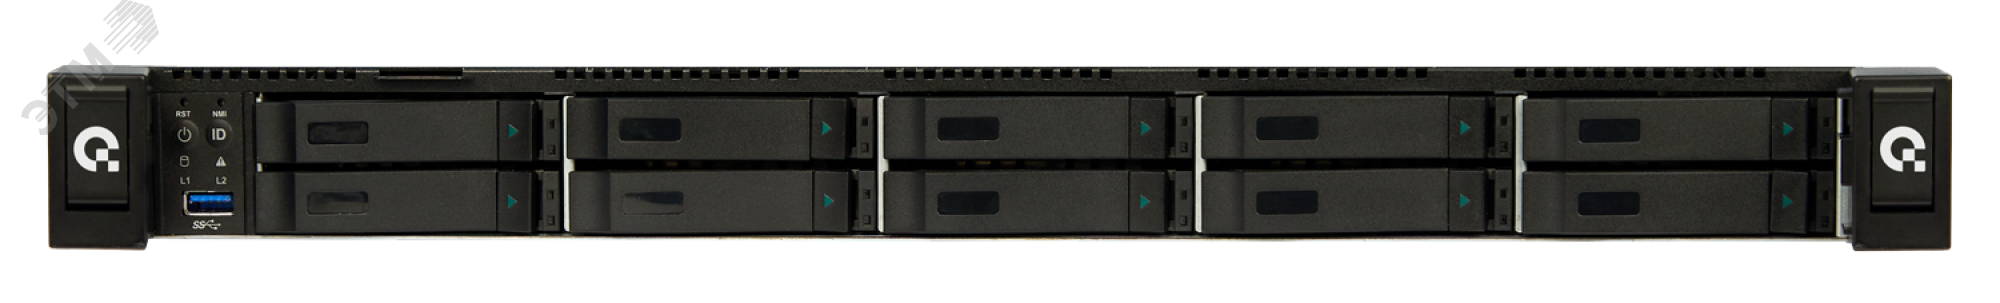 Сервер для предприятий и ЦОД D110CF 1U, Xeon Scalable v2, до 10 накопителей, ОЗУ до 6 ТБ DDR4 T50 D110CF Aquarius - превью 3